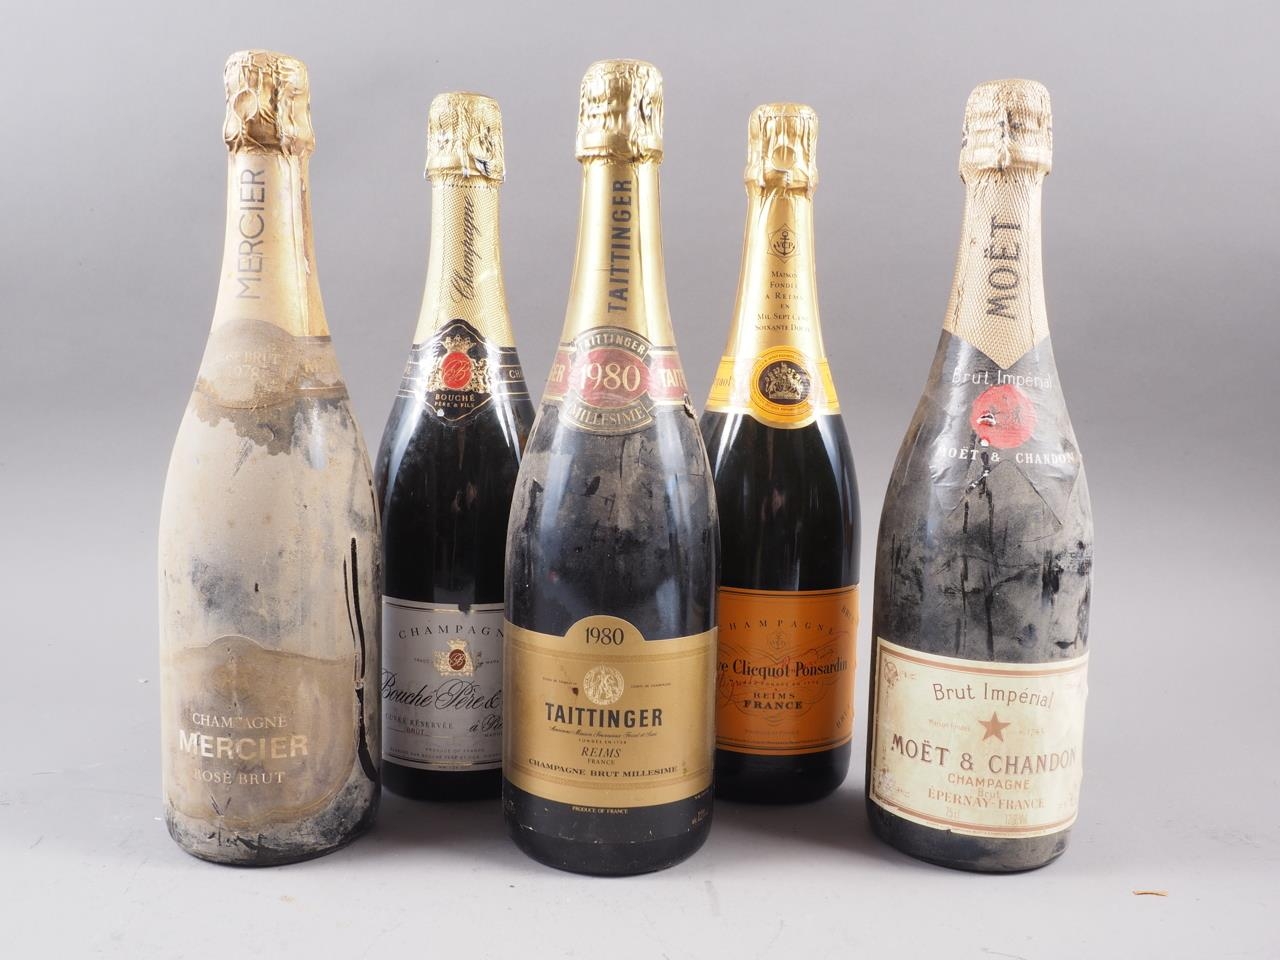 Five bottles of champagne, comprising Taittinger, Moet & Chandon, Veuve Clicquot, Mercier & Rouche